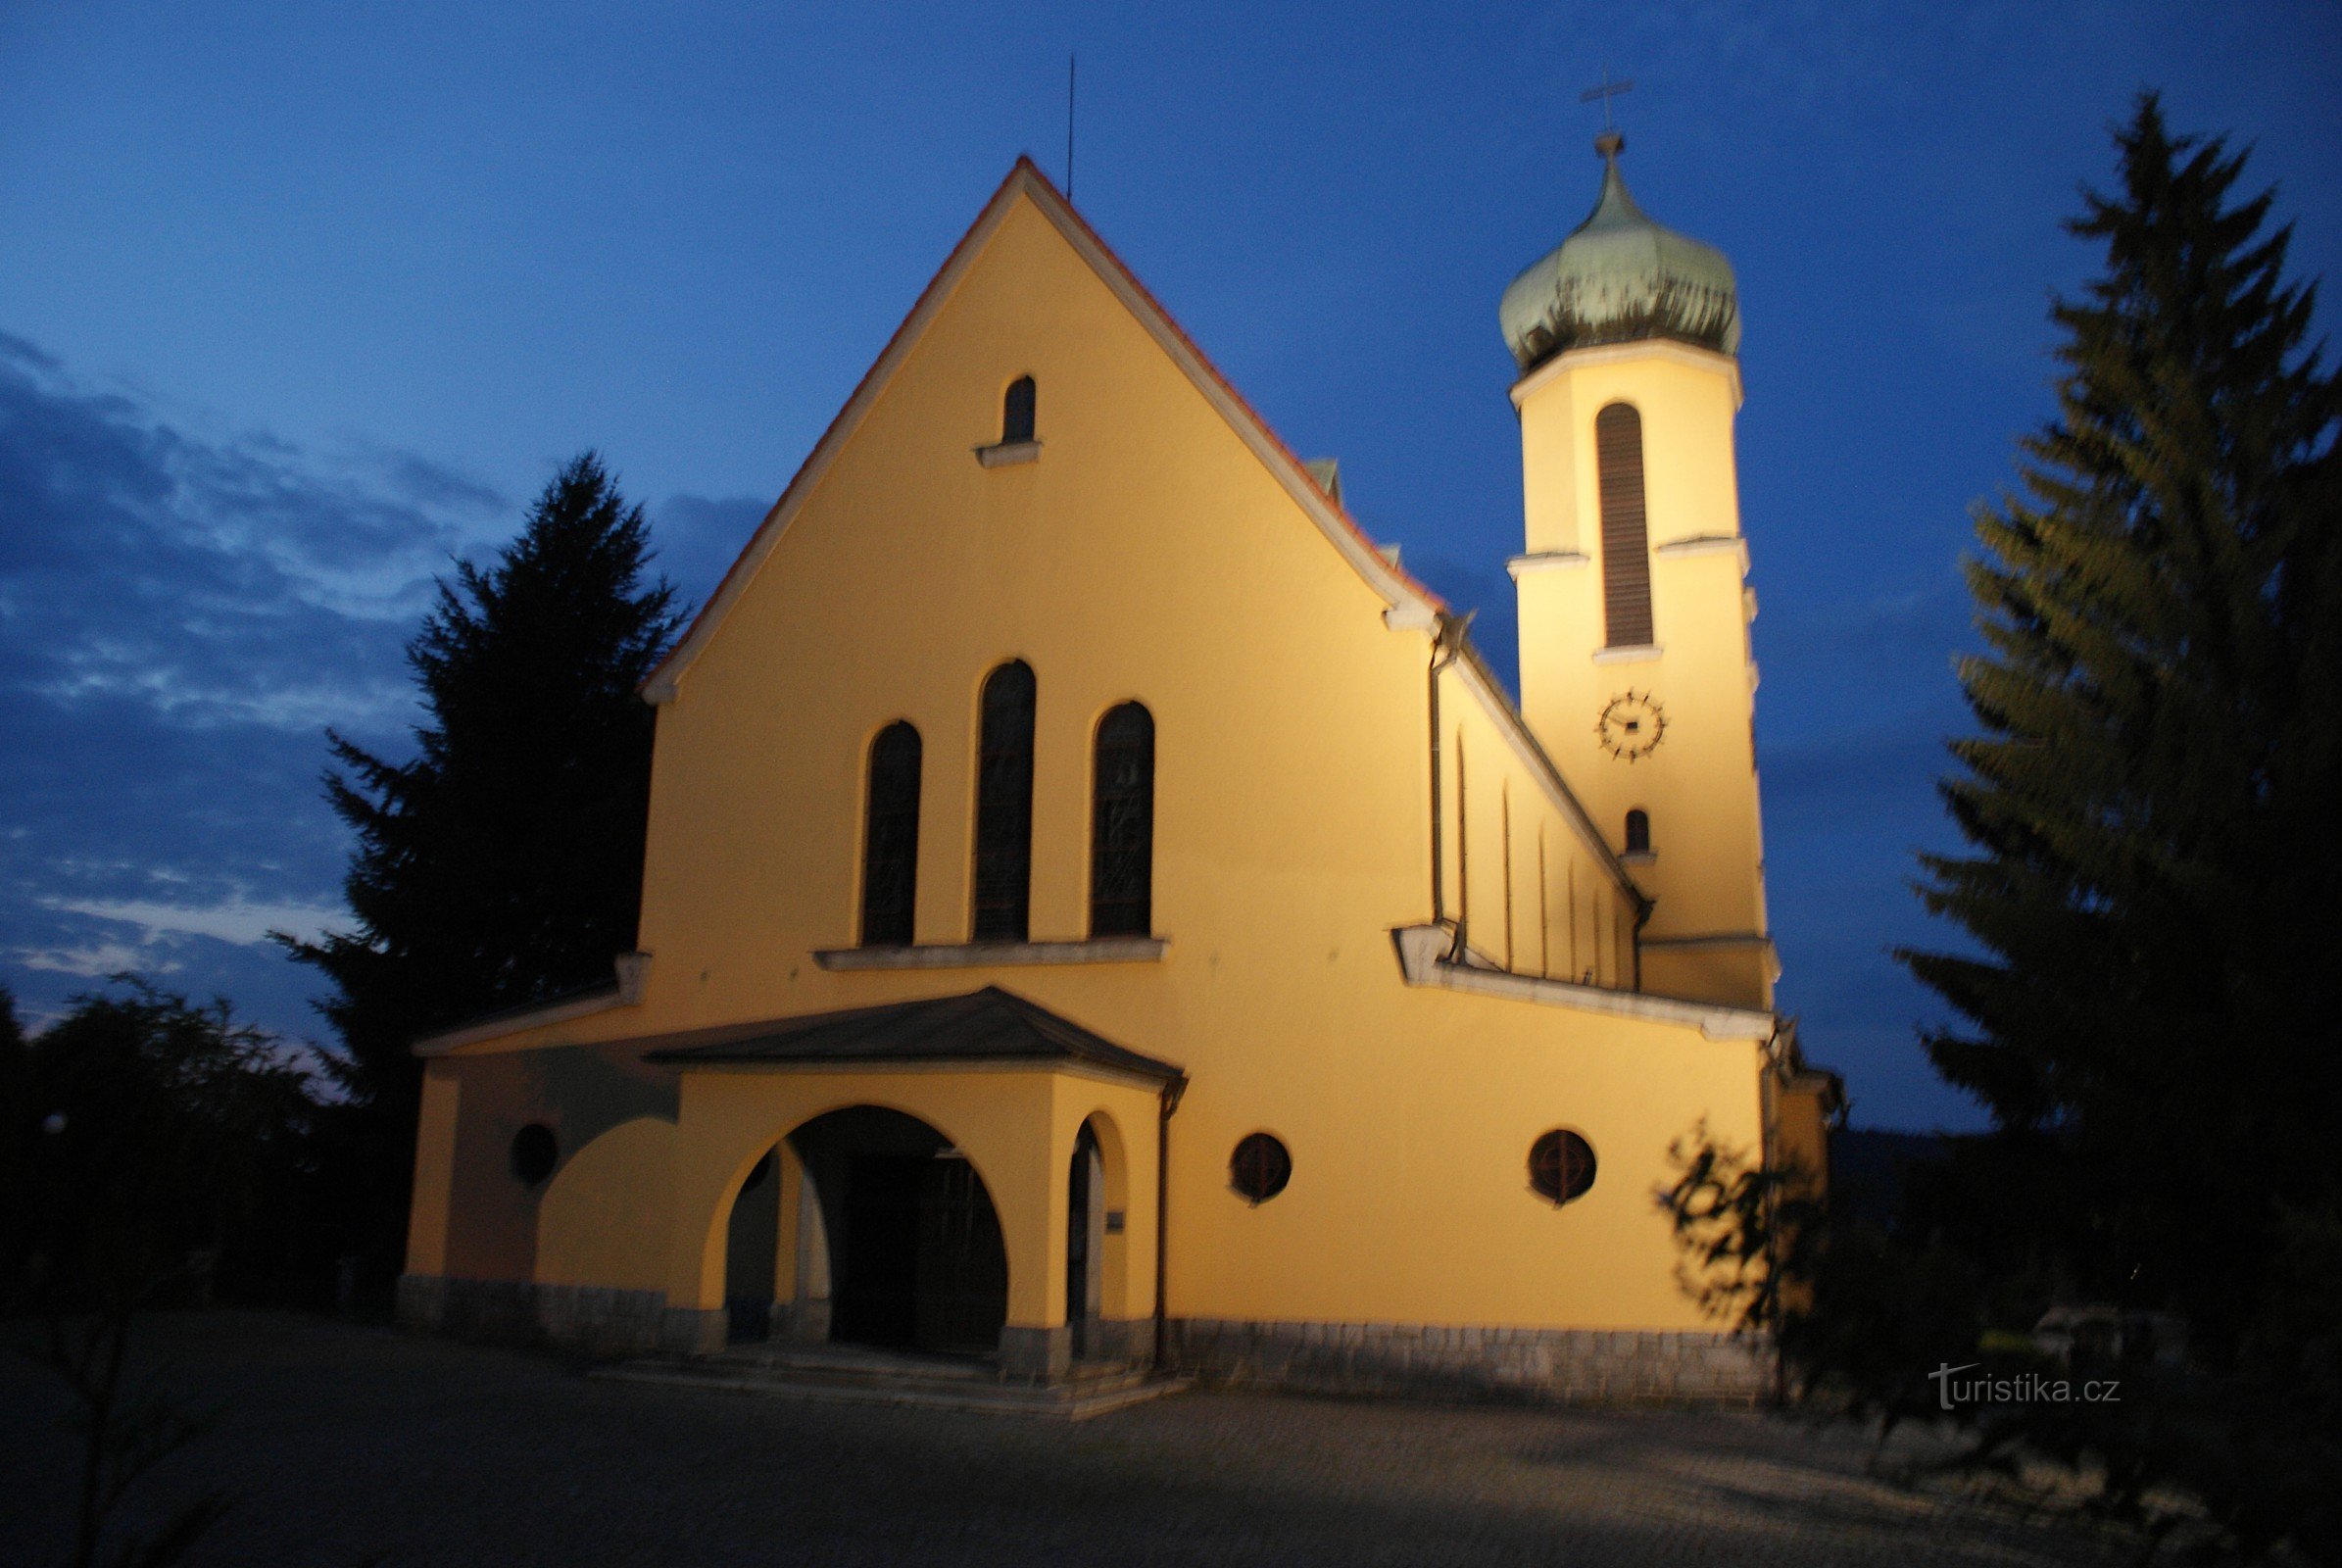 Vétrní - crkva sv. Jan Nepomucký